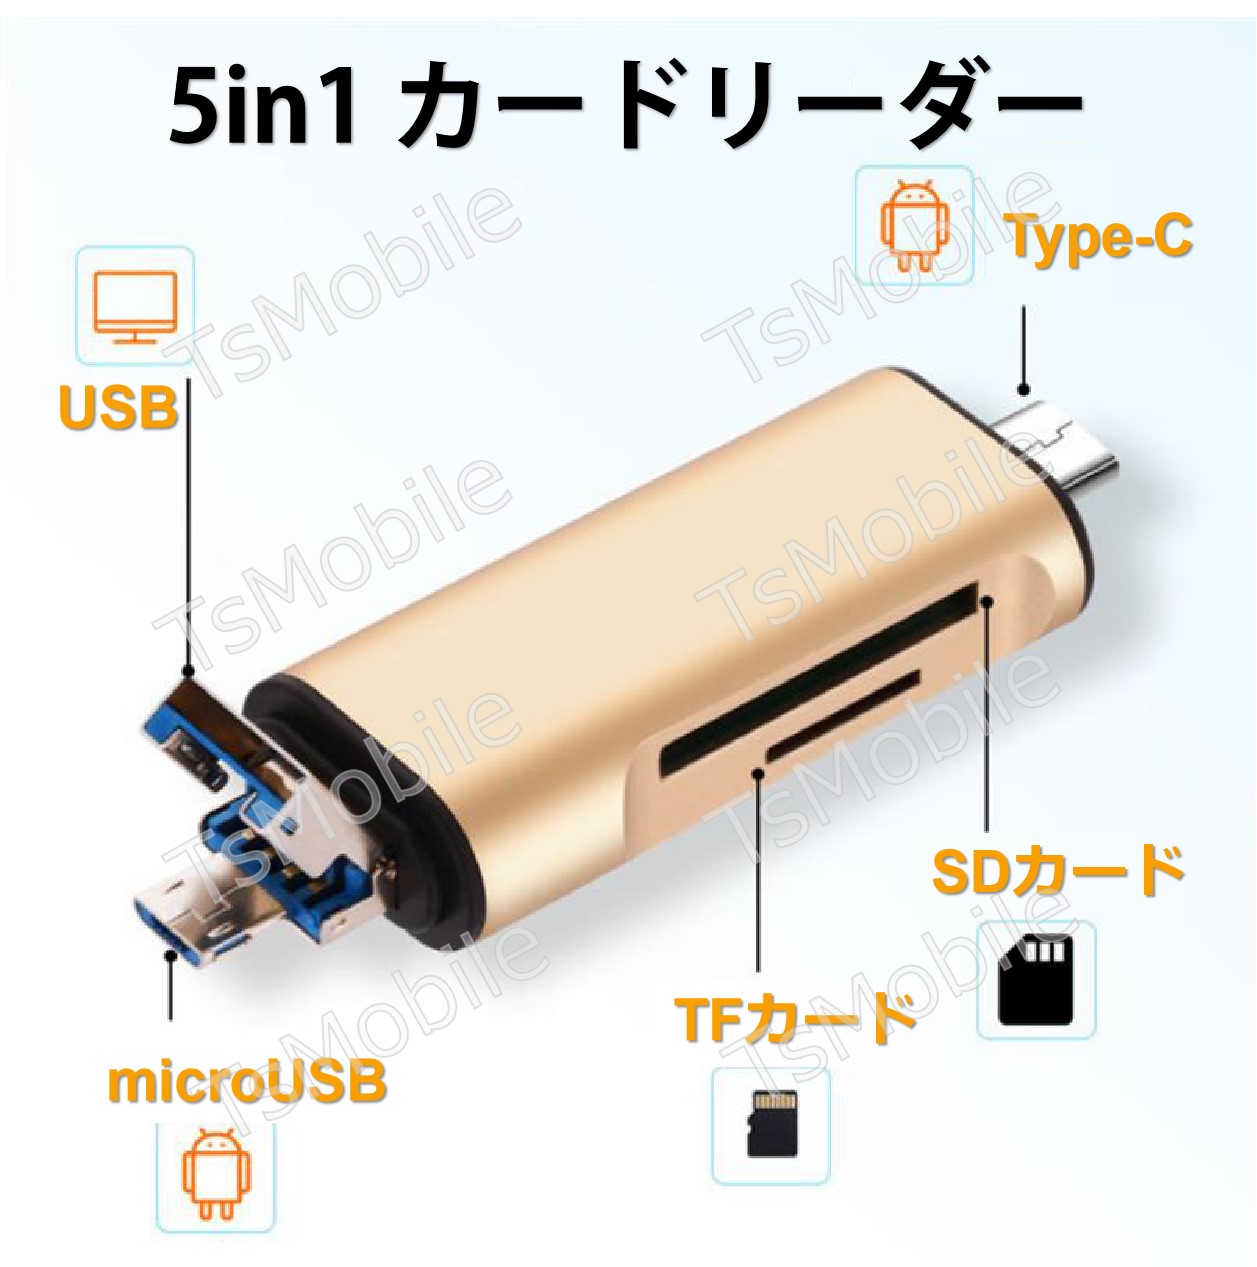 5in1 TypeC USB MicroUSB SD TFカードリーダー OTG変換コネクタ Macbook メモリカードデータ移行 バックアップ スマホ 保存移動Android タブレット307373